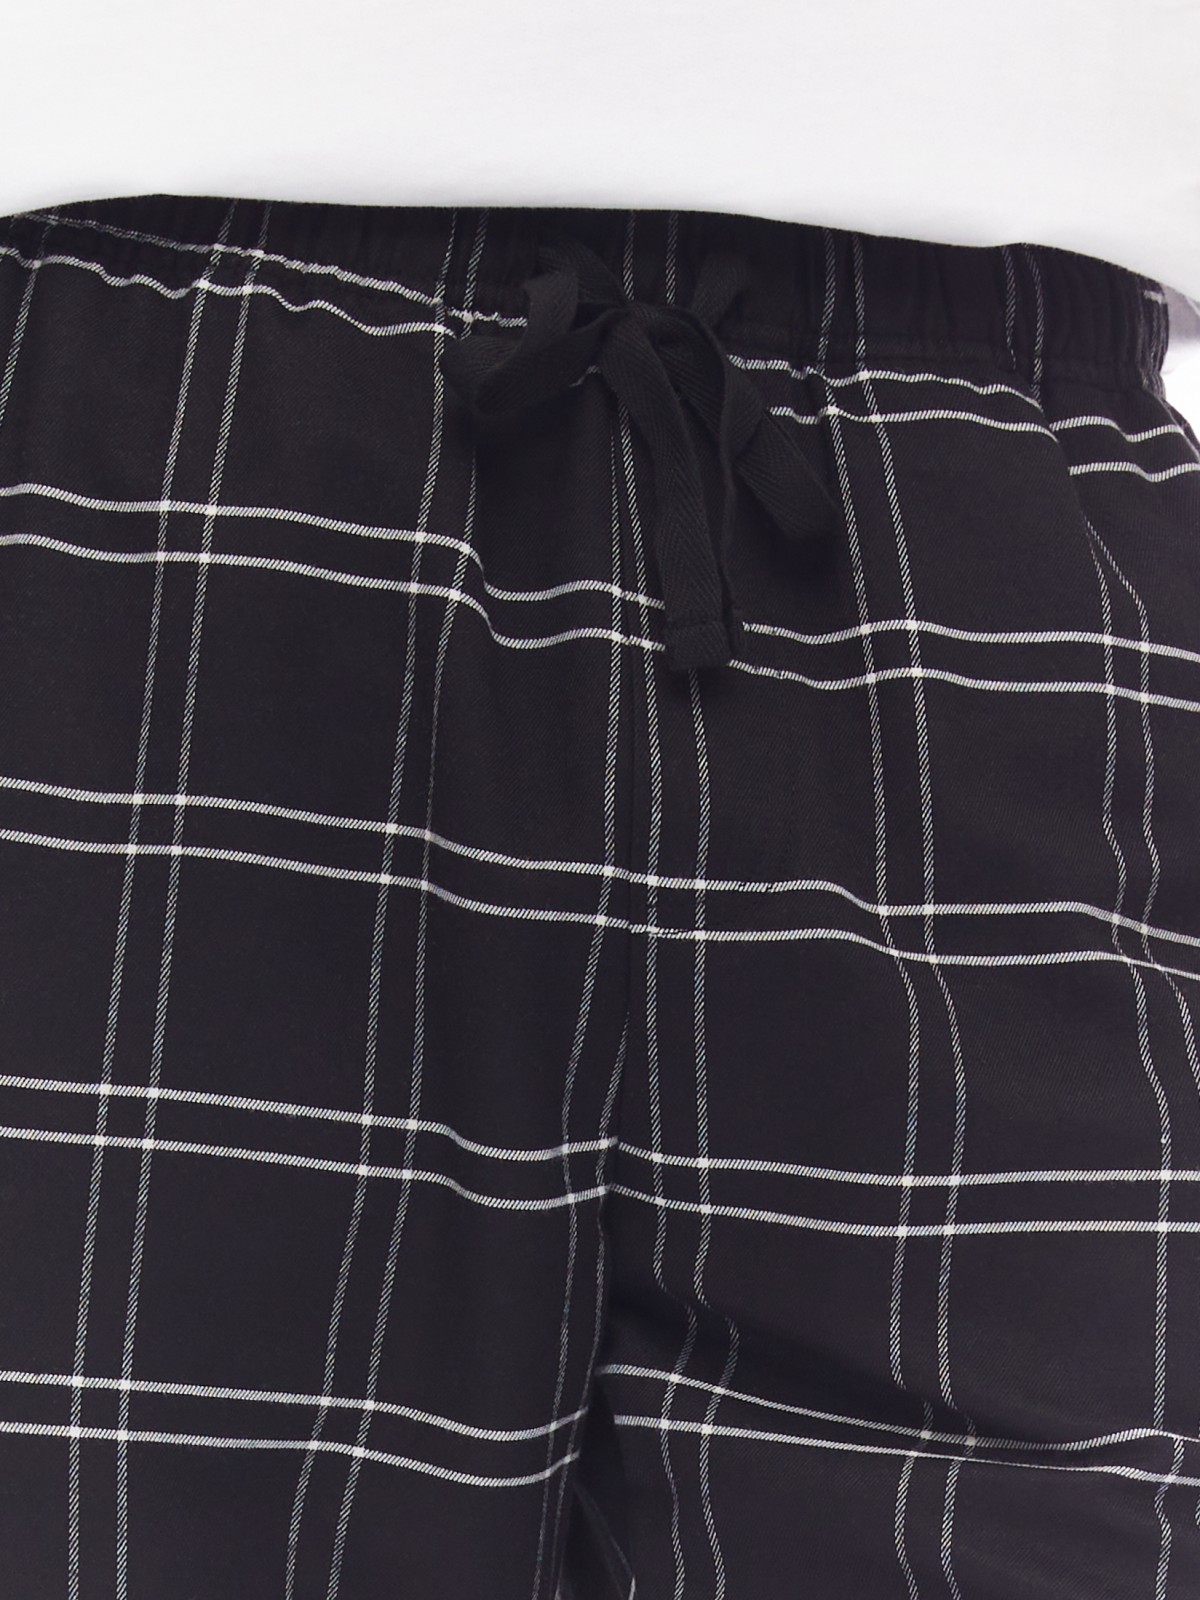 Домашние брюки в клетку на резинке zolla 614137359013, цвет черный, размер S - фото 4